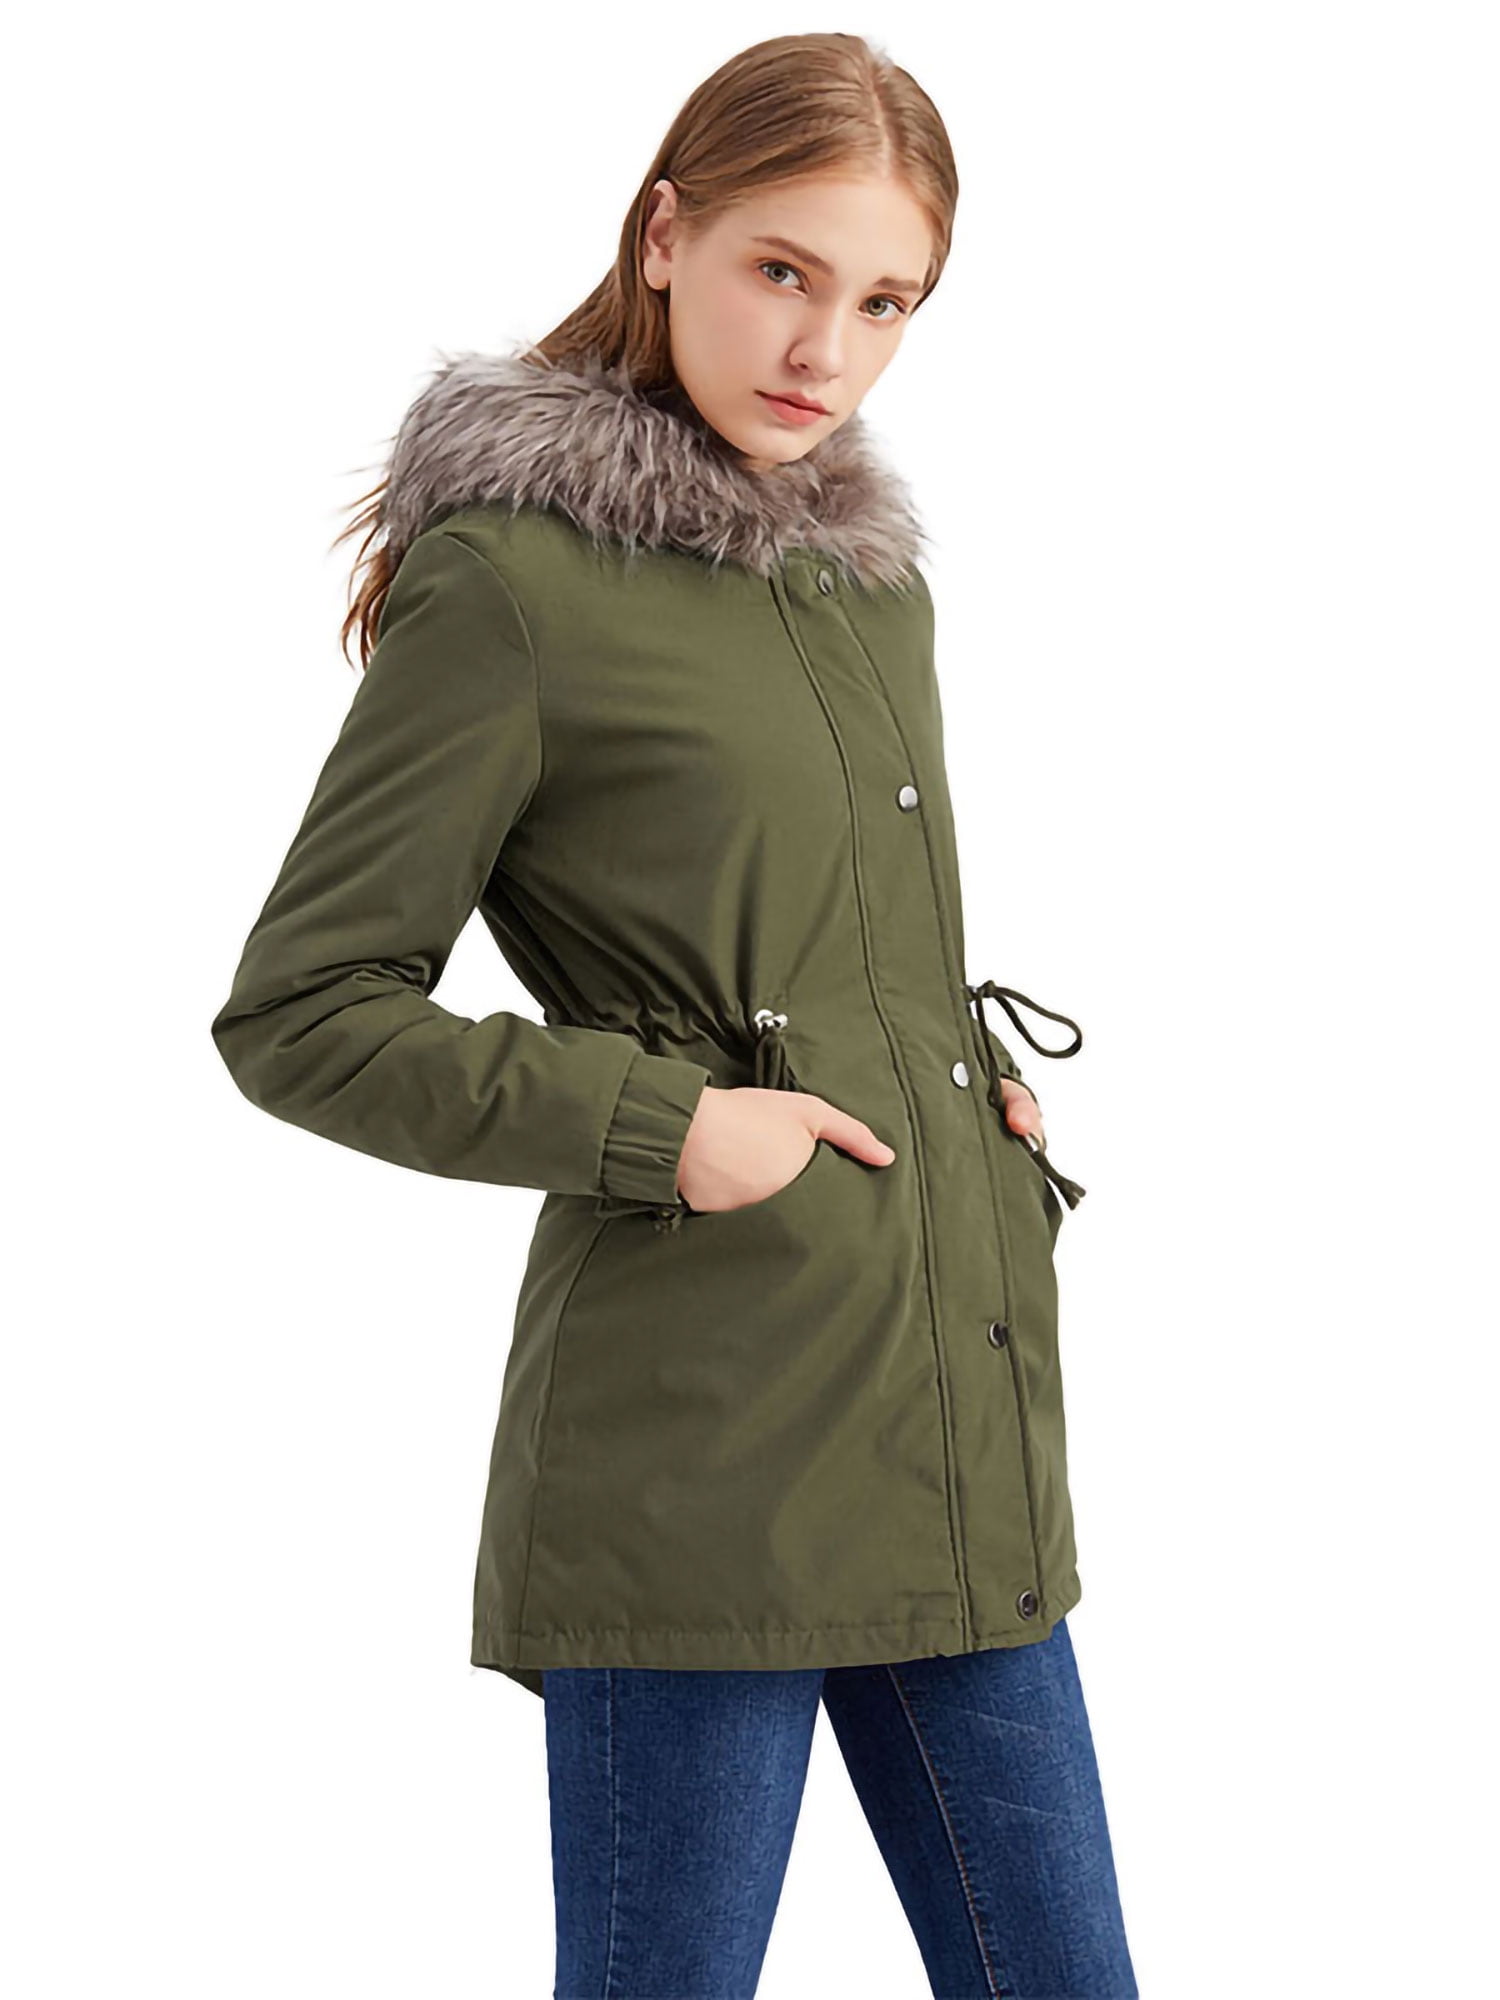 Women's Coat Fur Lined Trench Winter  Outwear Warm Jacket Hooded Parka Overcoat